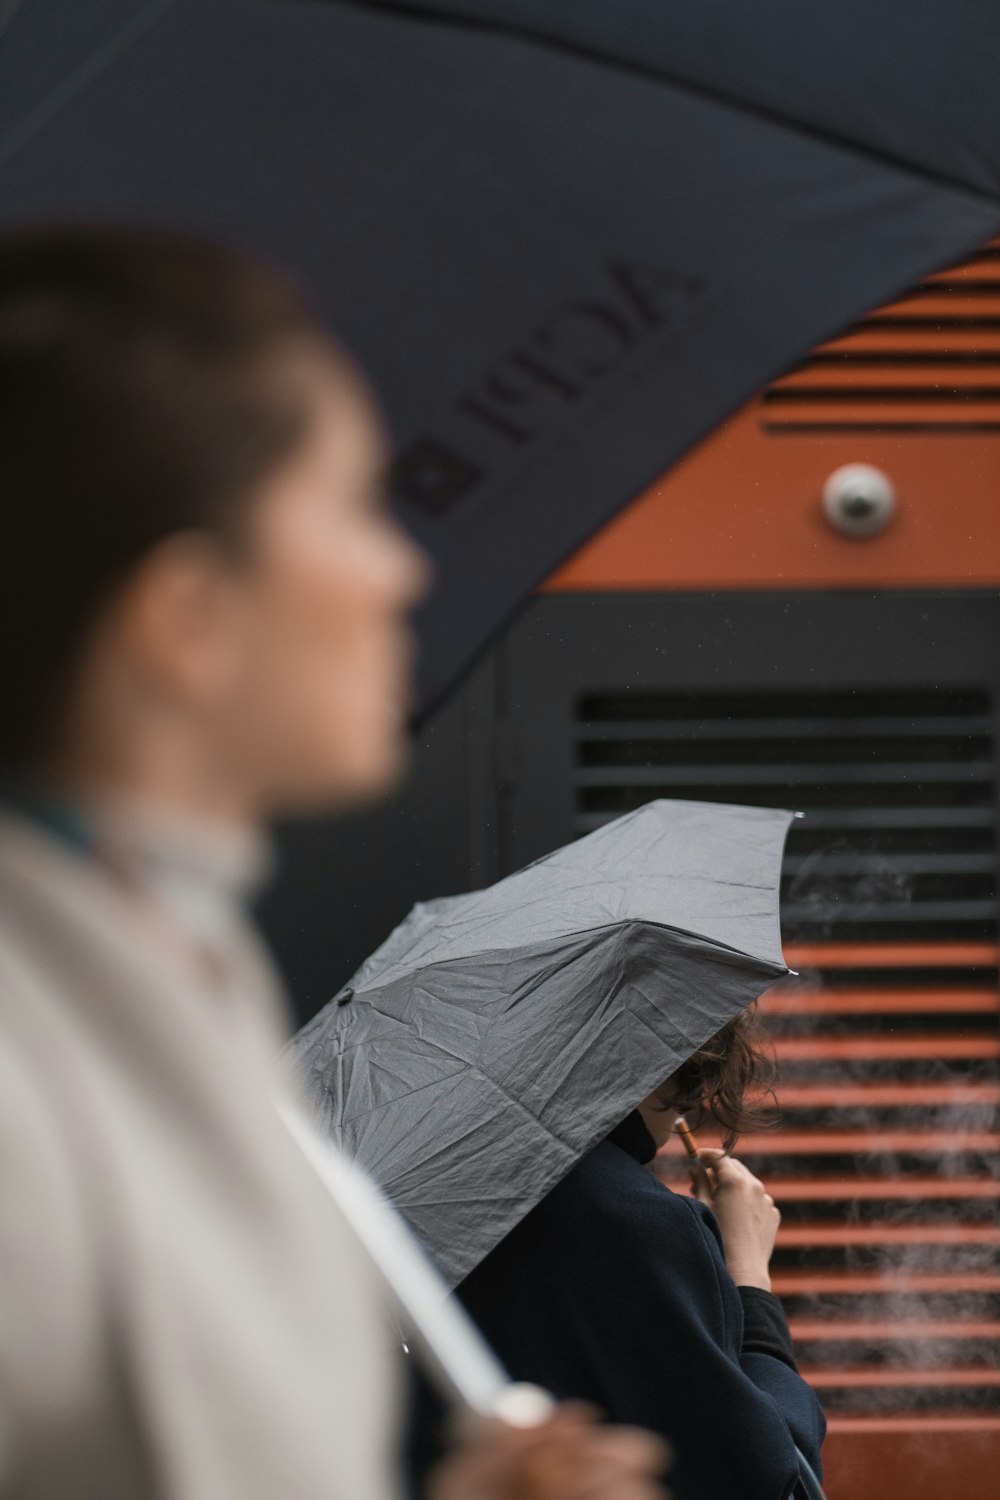 우산을 들고 있는 여자